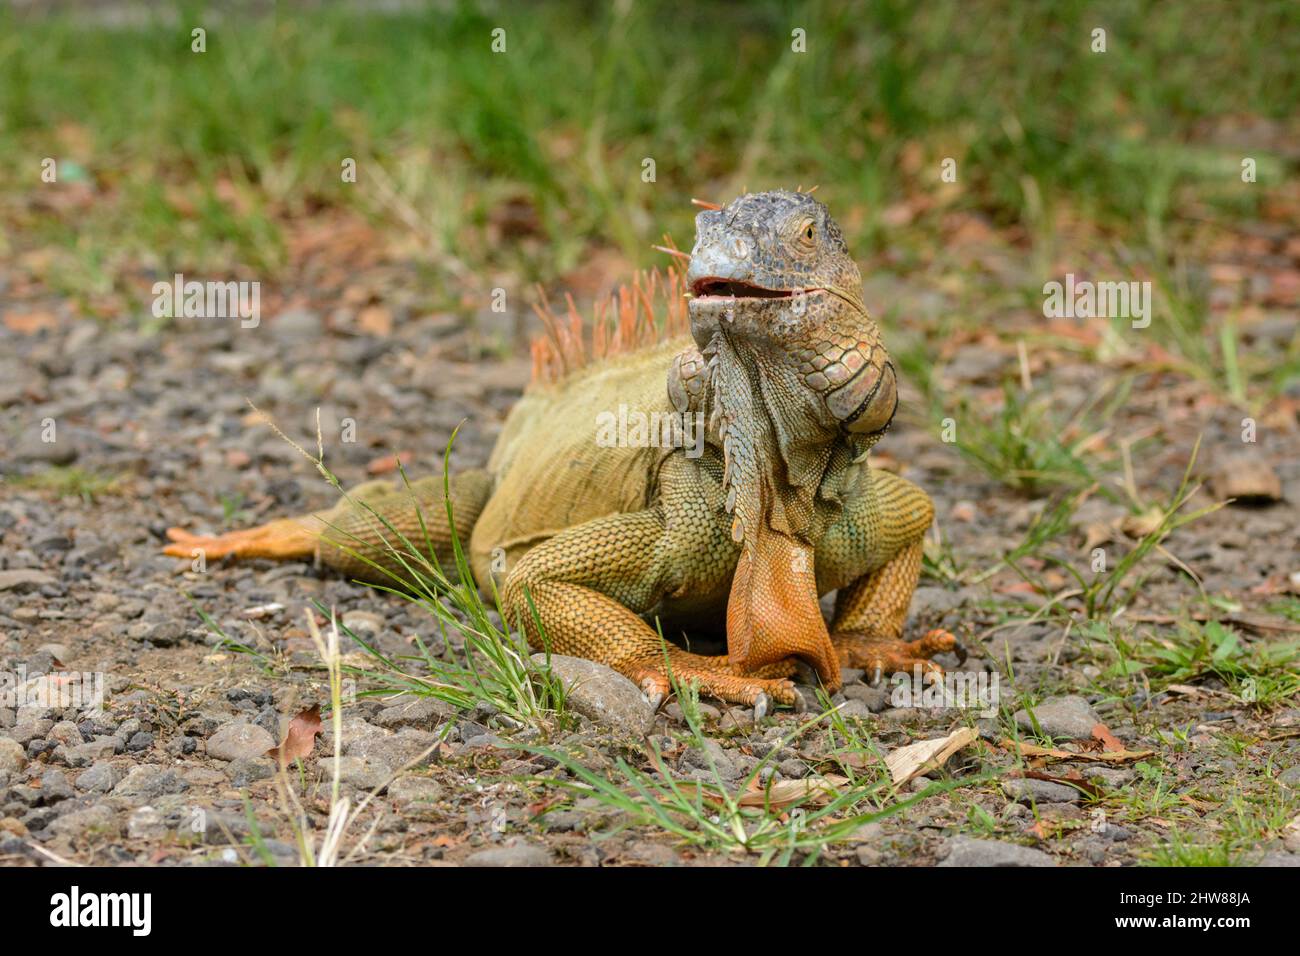 Iguana verte (iguana iguana), également connue sous le nom d'iguana américaine ou d'iguana verte commune, Costa Rica, Amérique centrale Banque D'Images